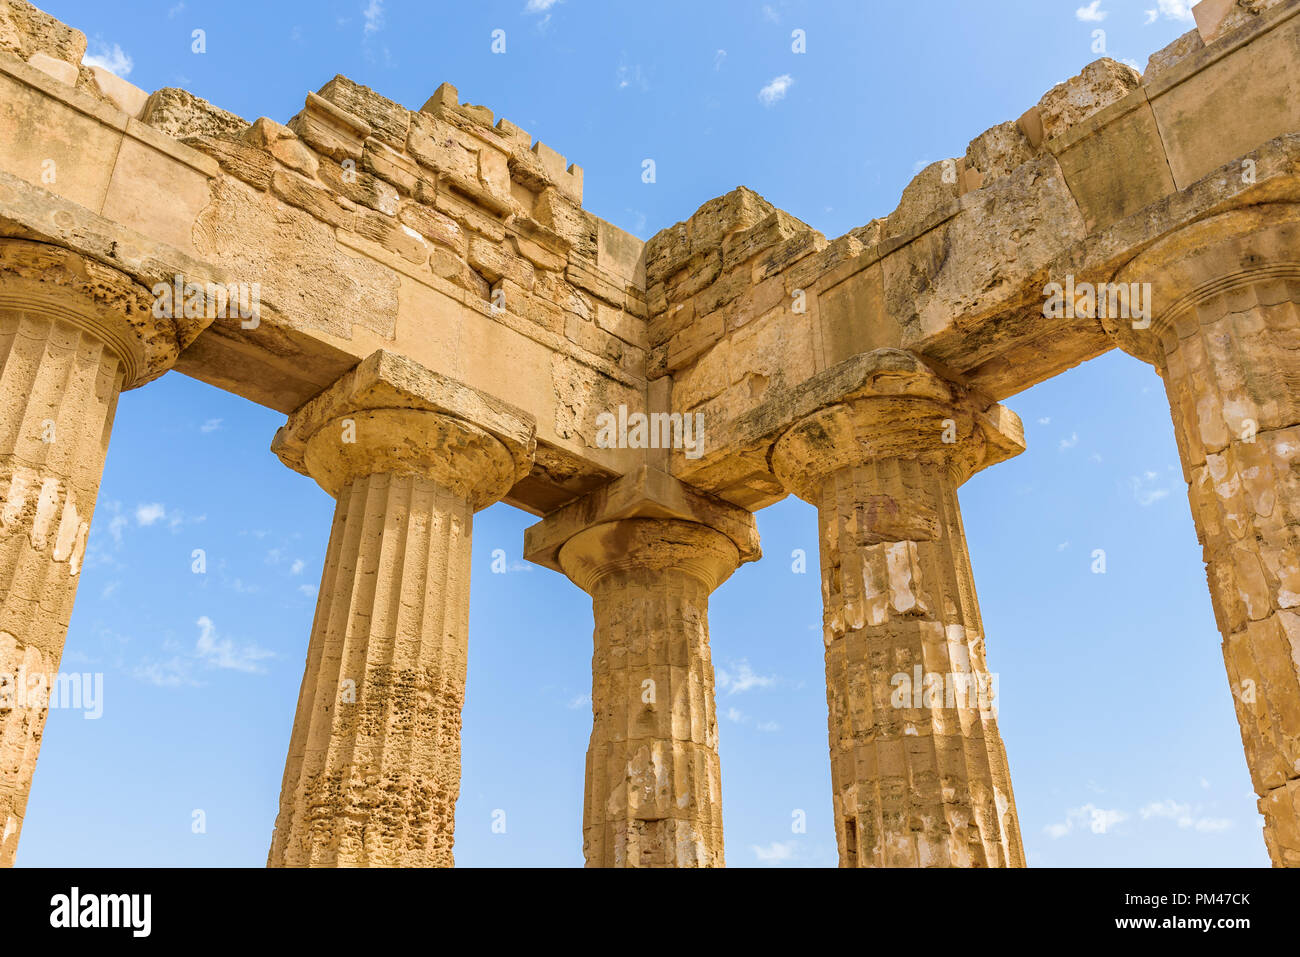 Rovine del tempio di Hera Tempio (E) all'interno del parco archeologico di Selinunte, una città greca su una collina al mare nella costa sud occidentale della Sicilia. Foto Stock